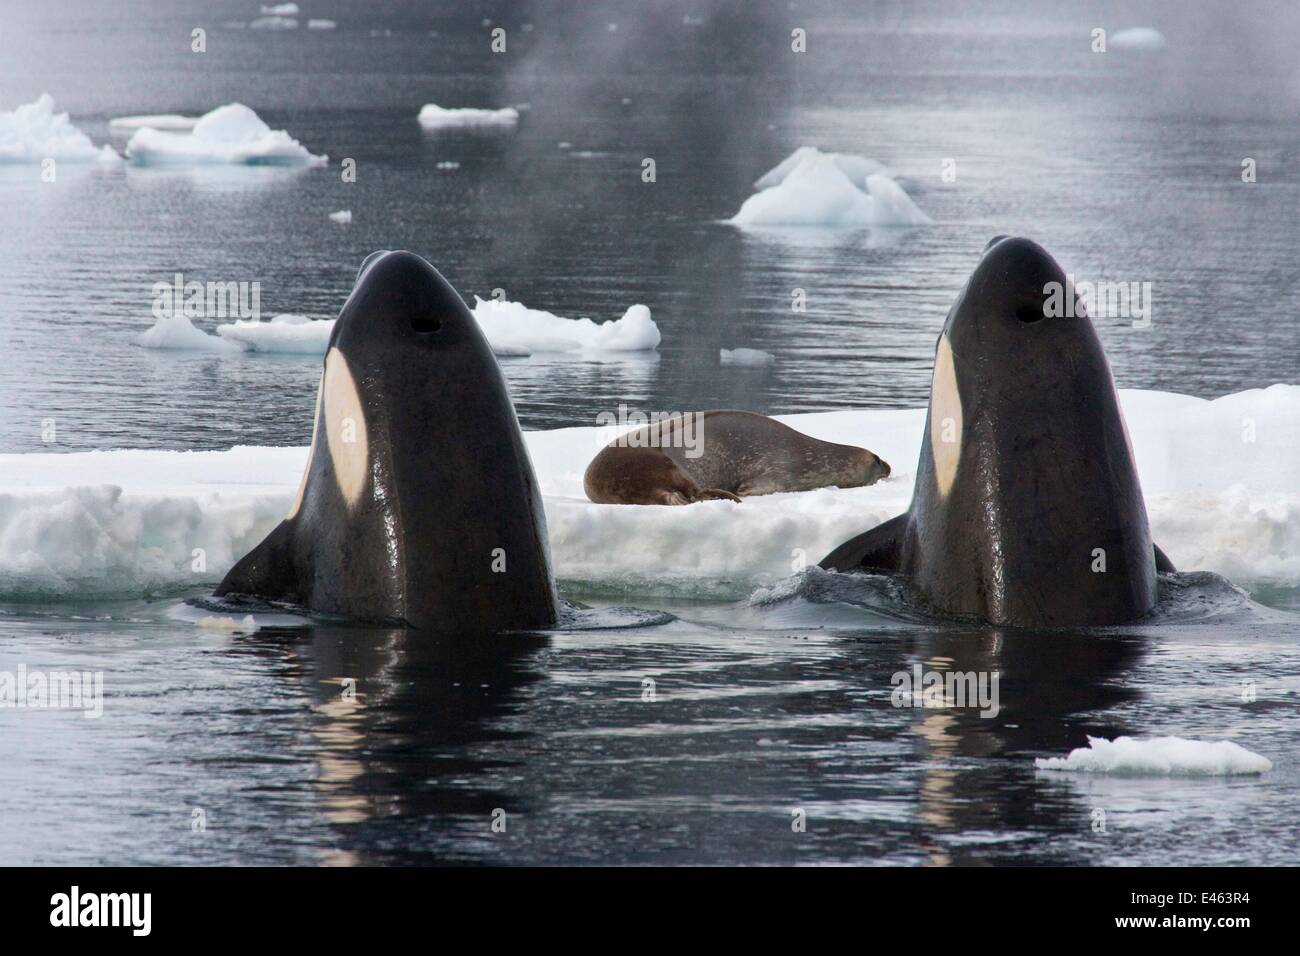 Les orques (Orcinus orca) spy-hopping pour observer Phoque de Weddell (Leptonychotes weddellii) en préparation pour le renverser à partir de la glace par la création d'une vague. Baie Marguerite, Péninsule Antarctique, l'été. Livre d'arrêt sur image page plaque 123. Pris sur place pour Banque D'Images